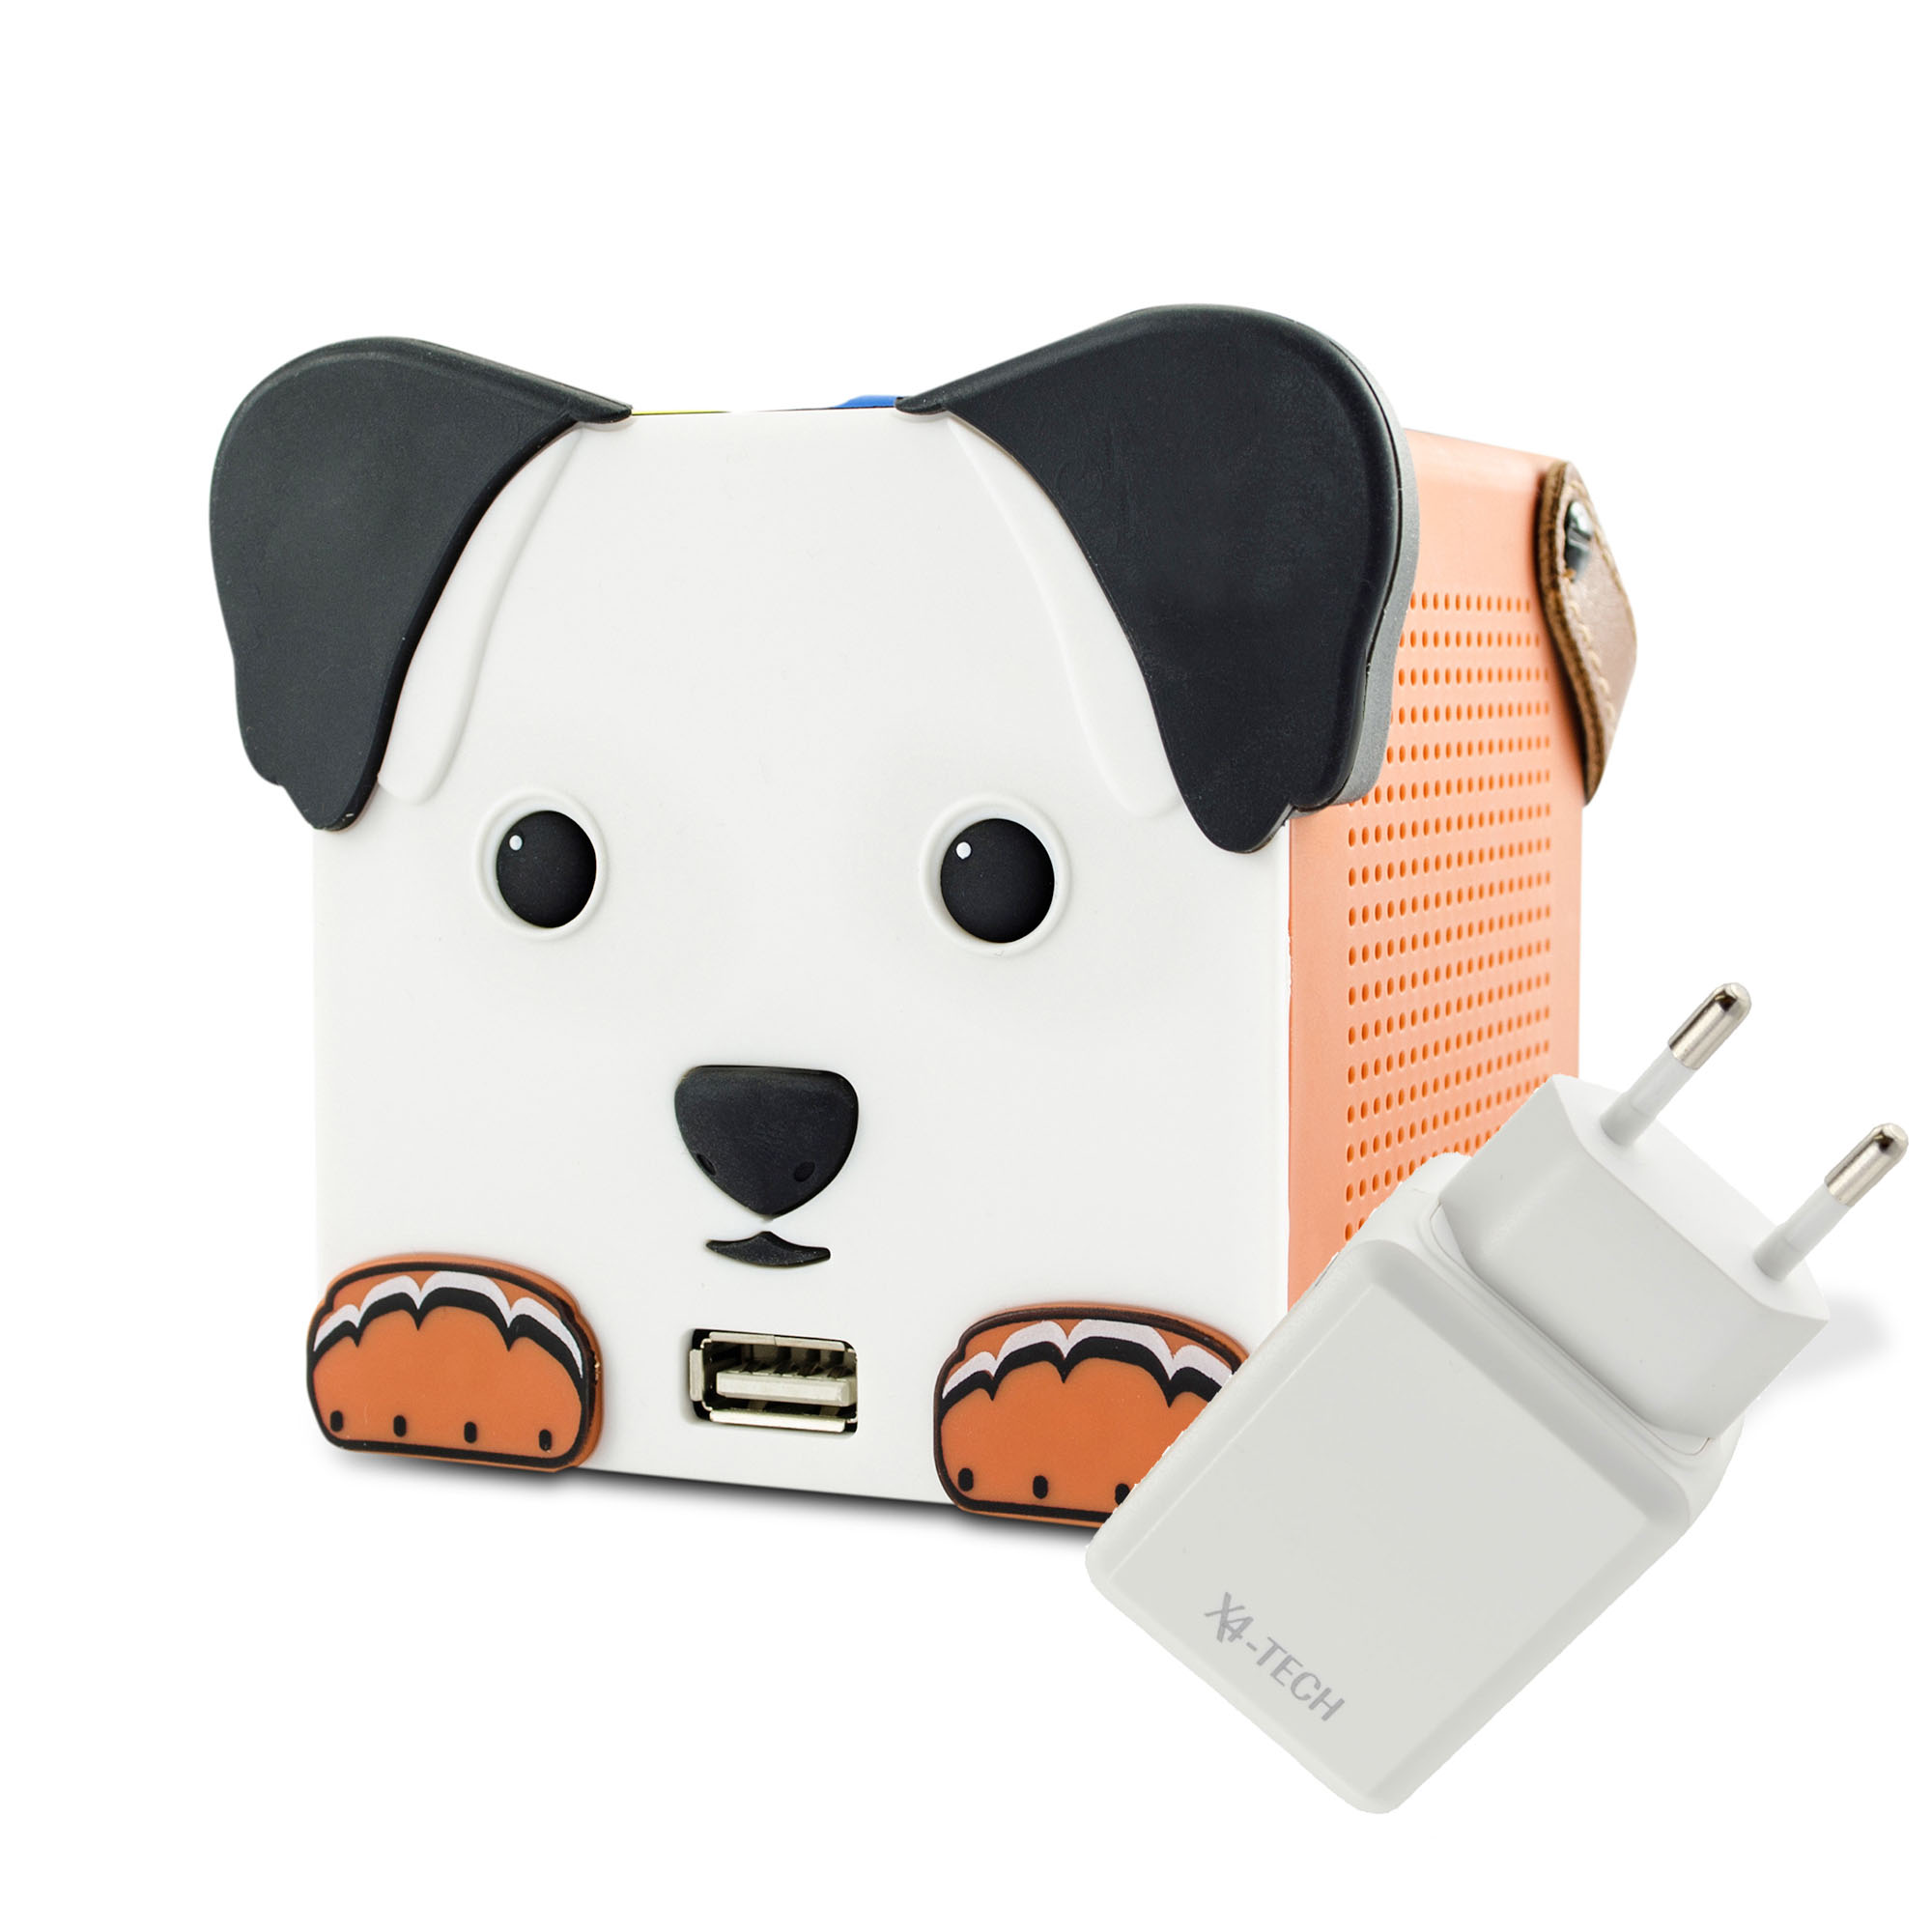 X4-TECH DogBox Kinder Lautsprecher, Kopplung über Bluetooth mit dem Smartphone oder Tablett, Musikwiedergabe SD-Karte, USB Stick, spielerisch bedienen